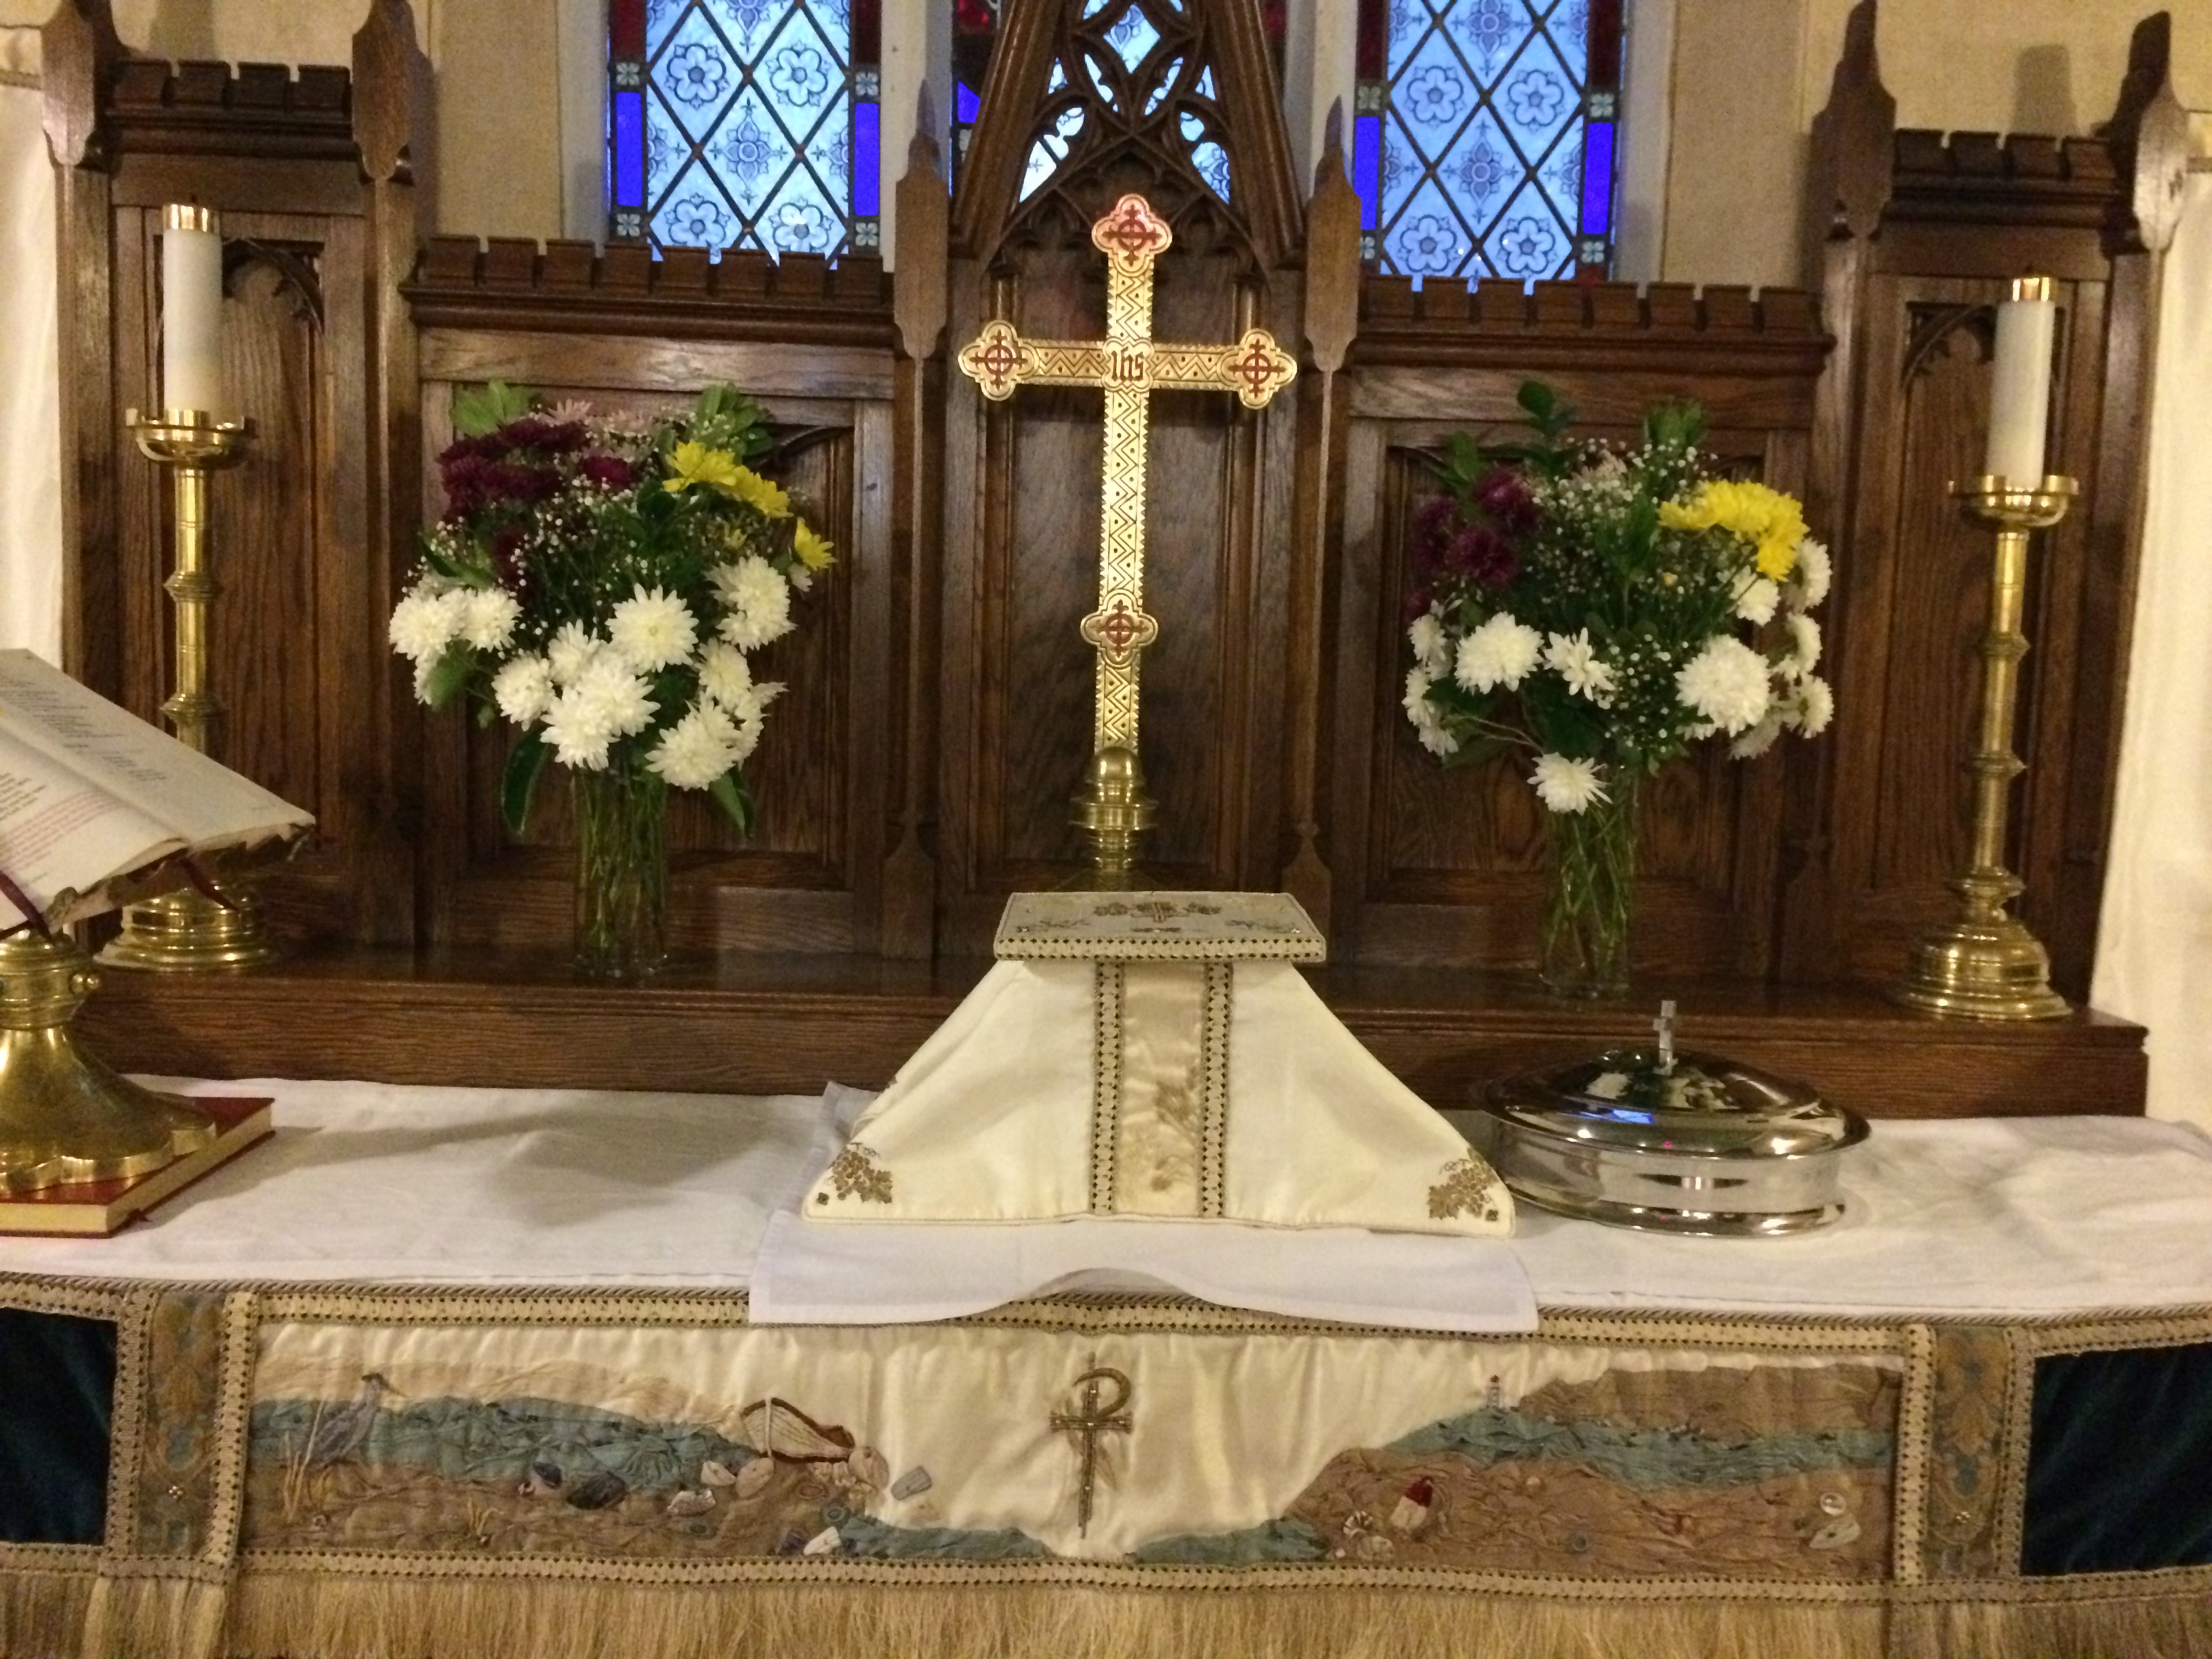 Sunday, November 20th at St. Luke's: Flowers on the Altar.